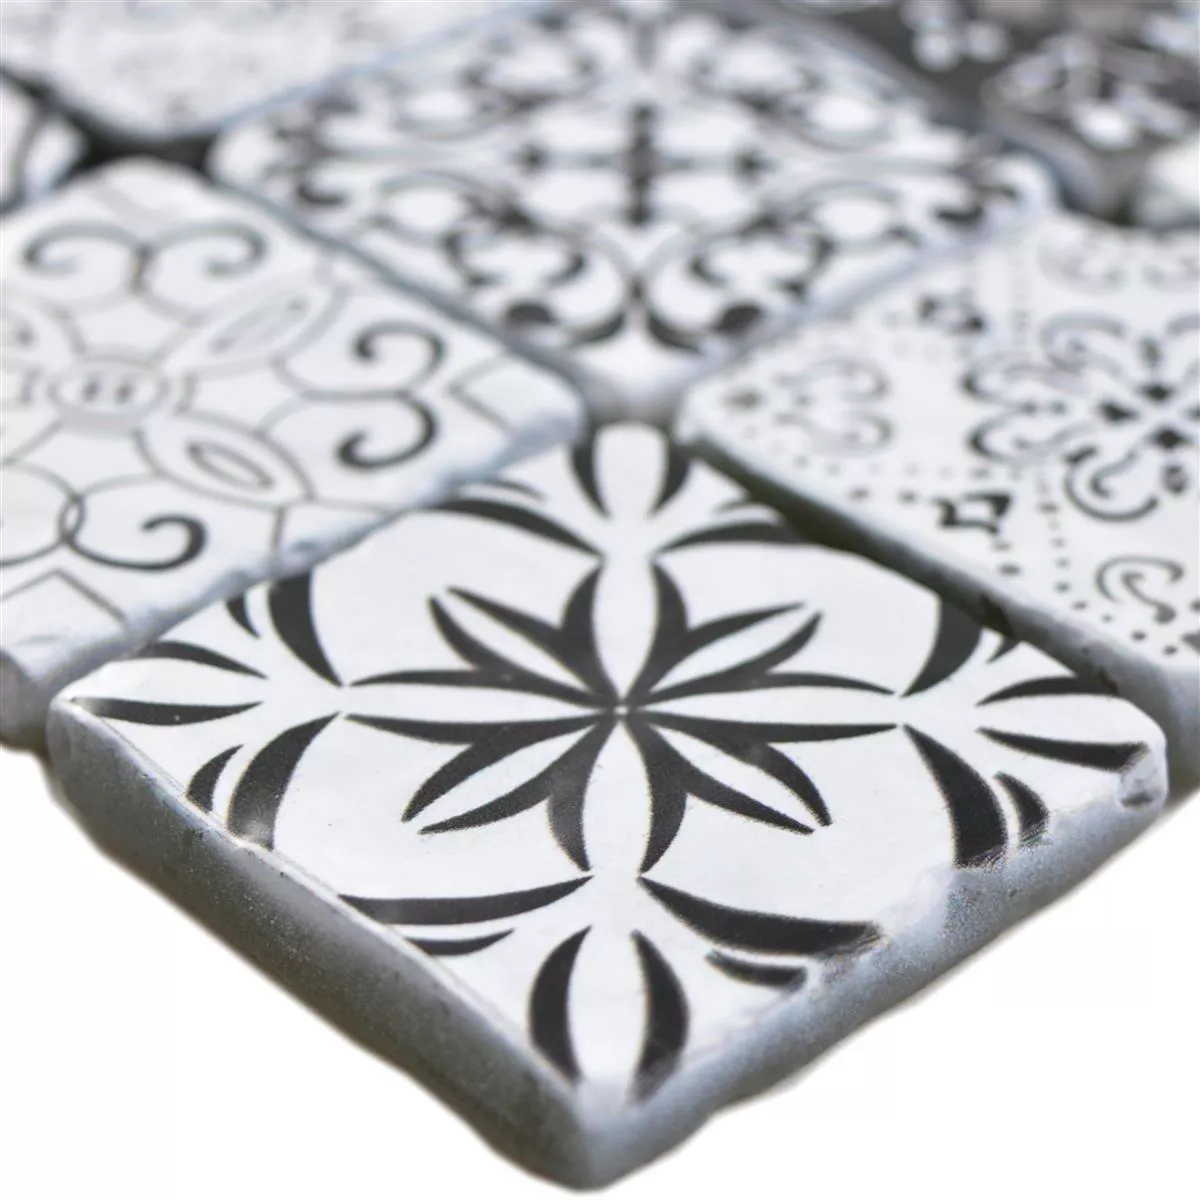 Glass Mosaic Tiles Starlite Retro Black White 48